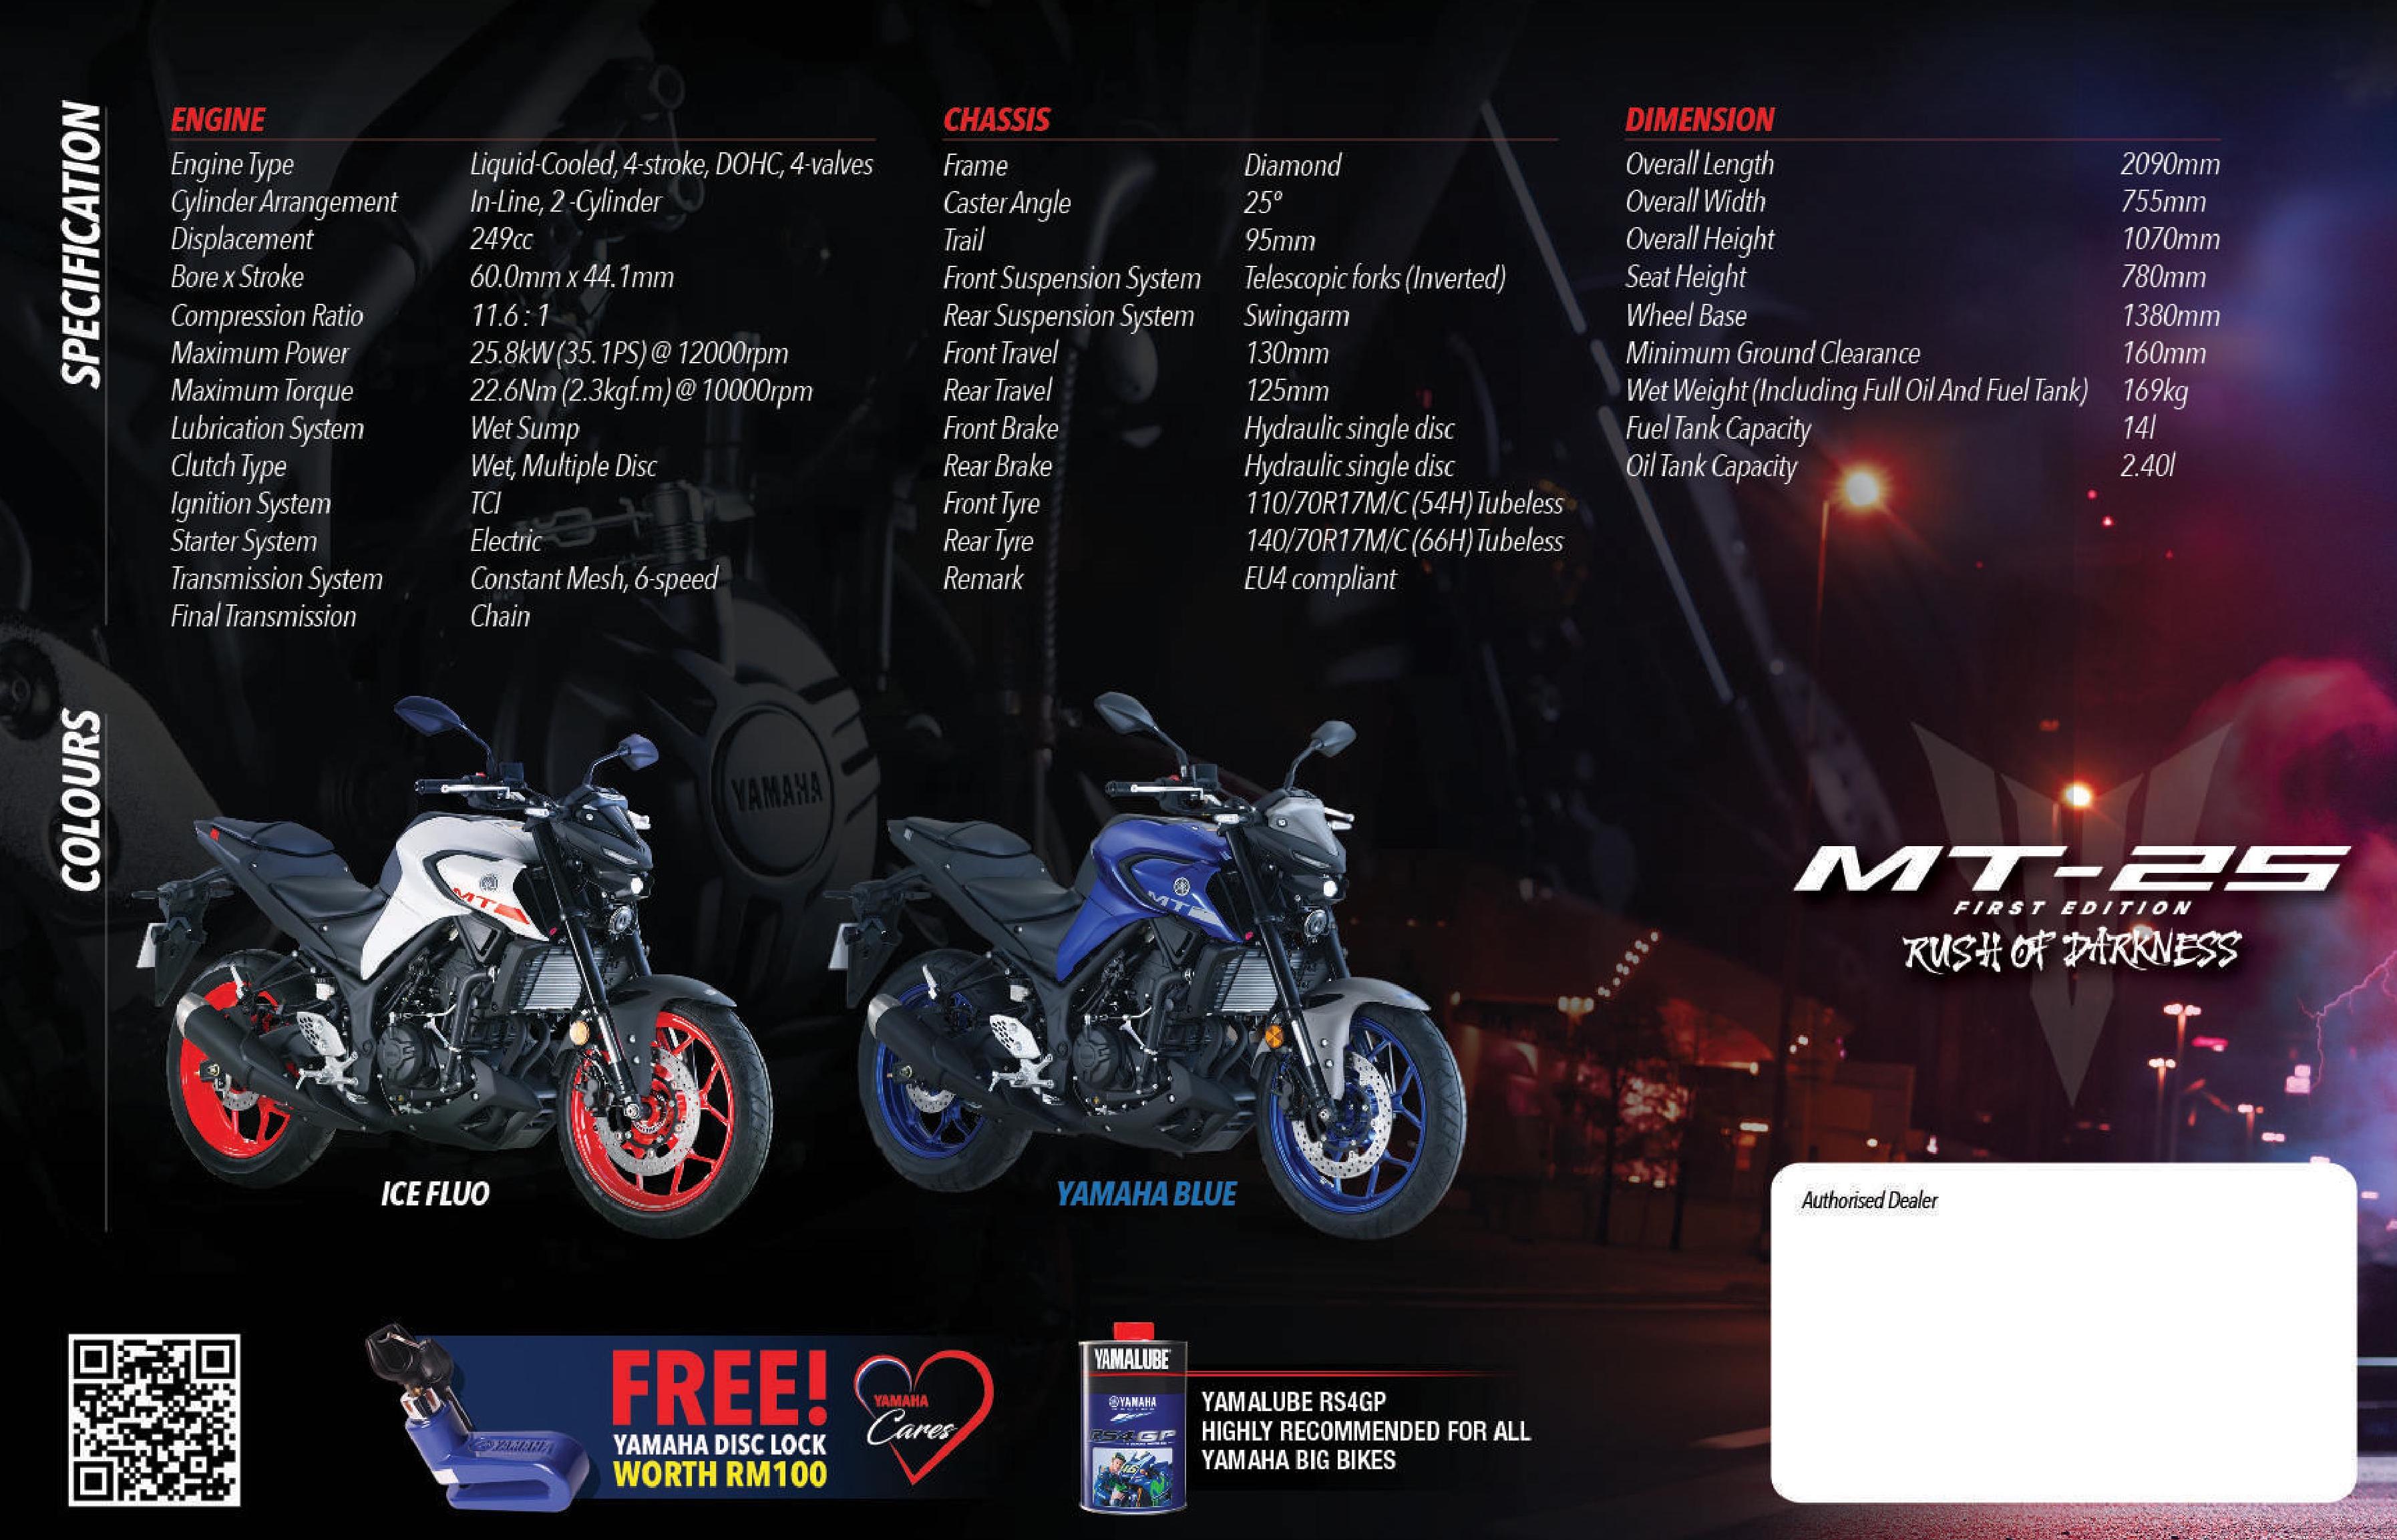 2021 Yamaha MT-25 Brochure Scan